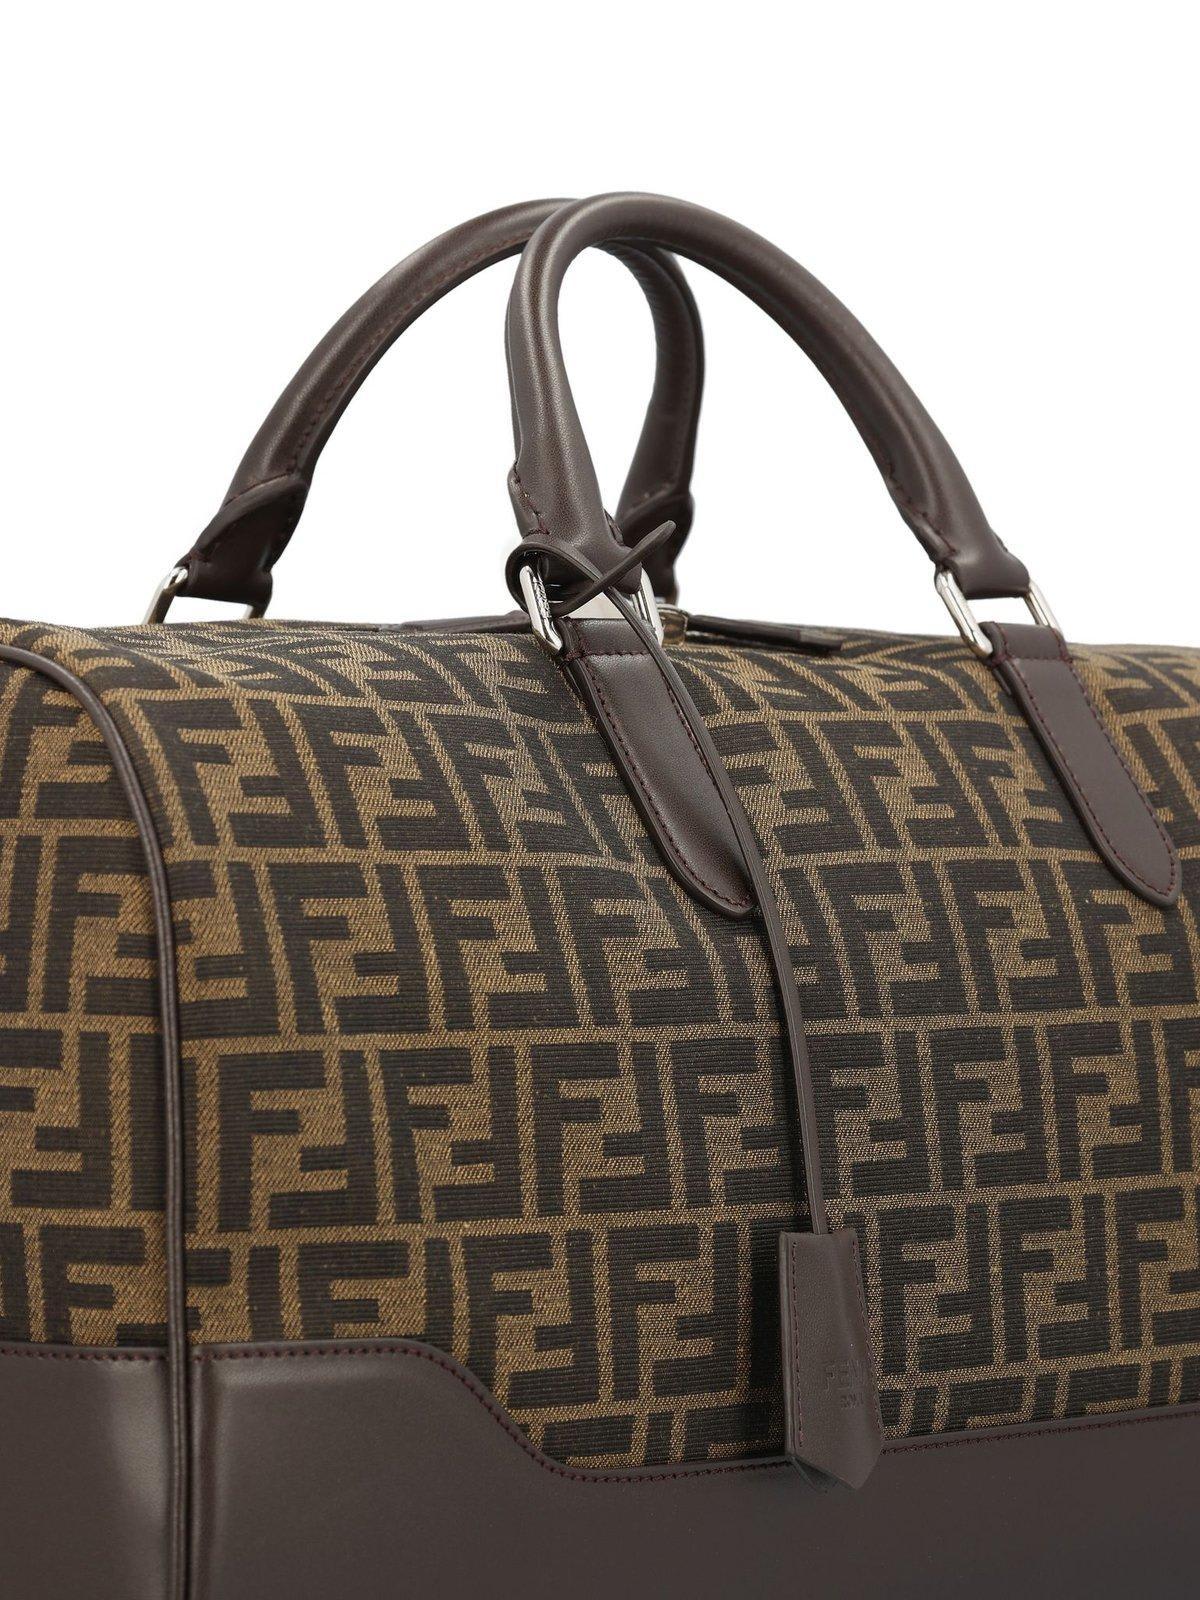 Fendi Ff Jacquard Medium Duffle Bag in Brown for Men | Lyst